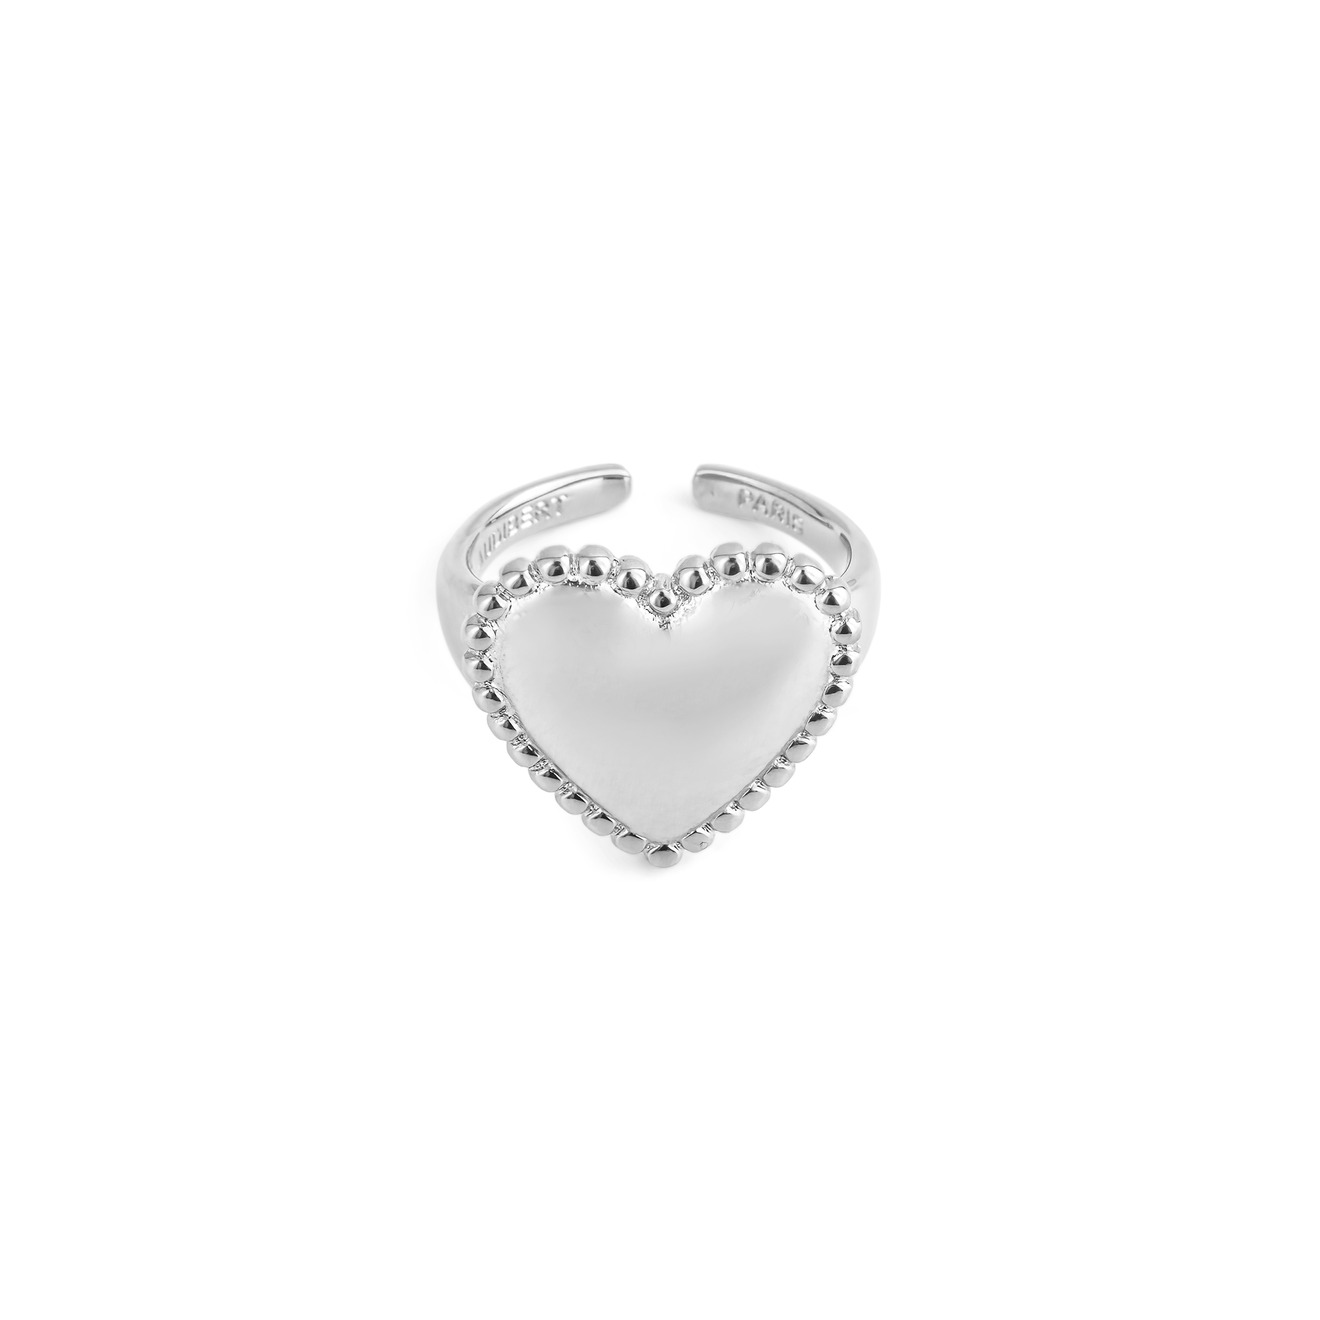 Philippe Audibert Кольцо с сердцем Wanda с серебряным покрытием wanda p315 7 00 19 r8